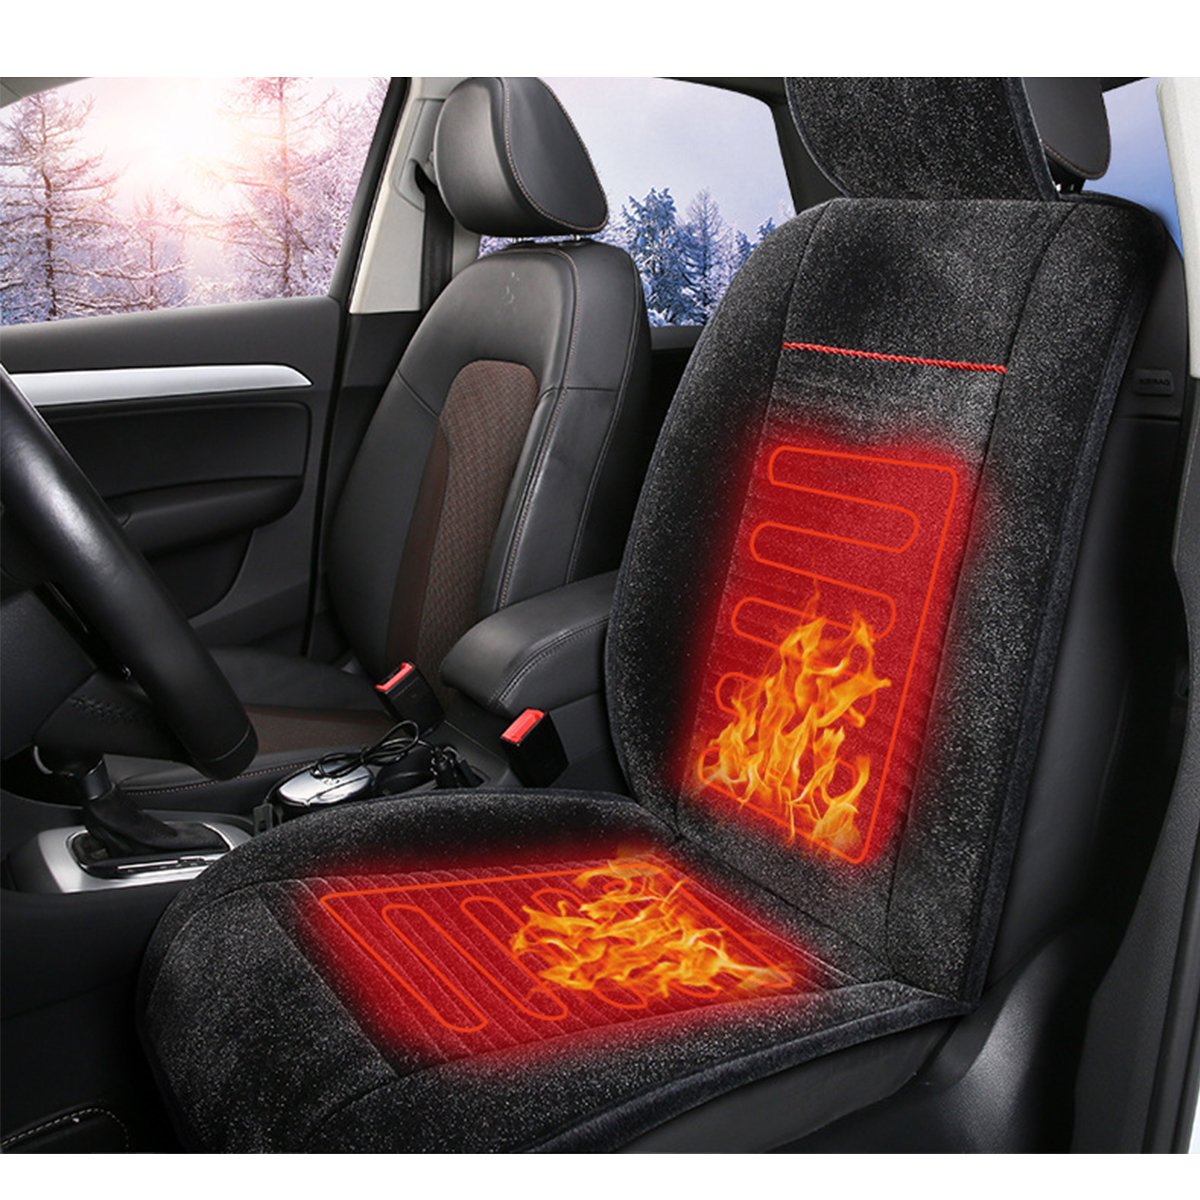 نکات تکمیلی در مورد گرمکن صندلی خودرو